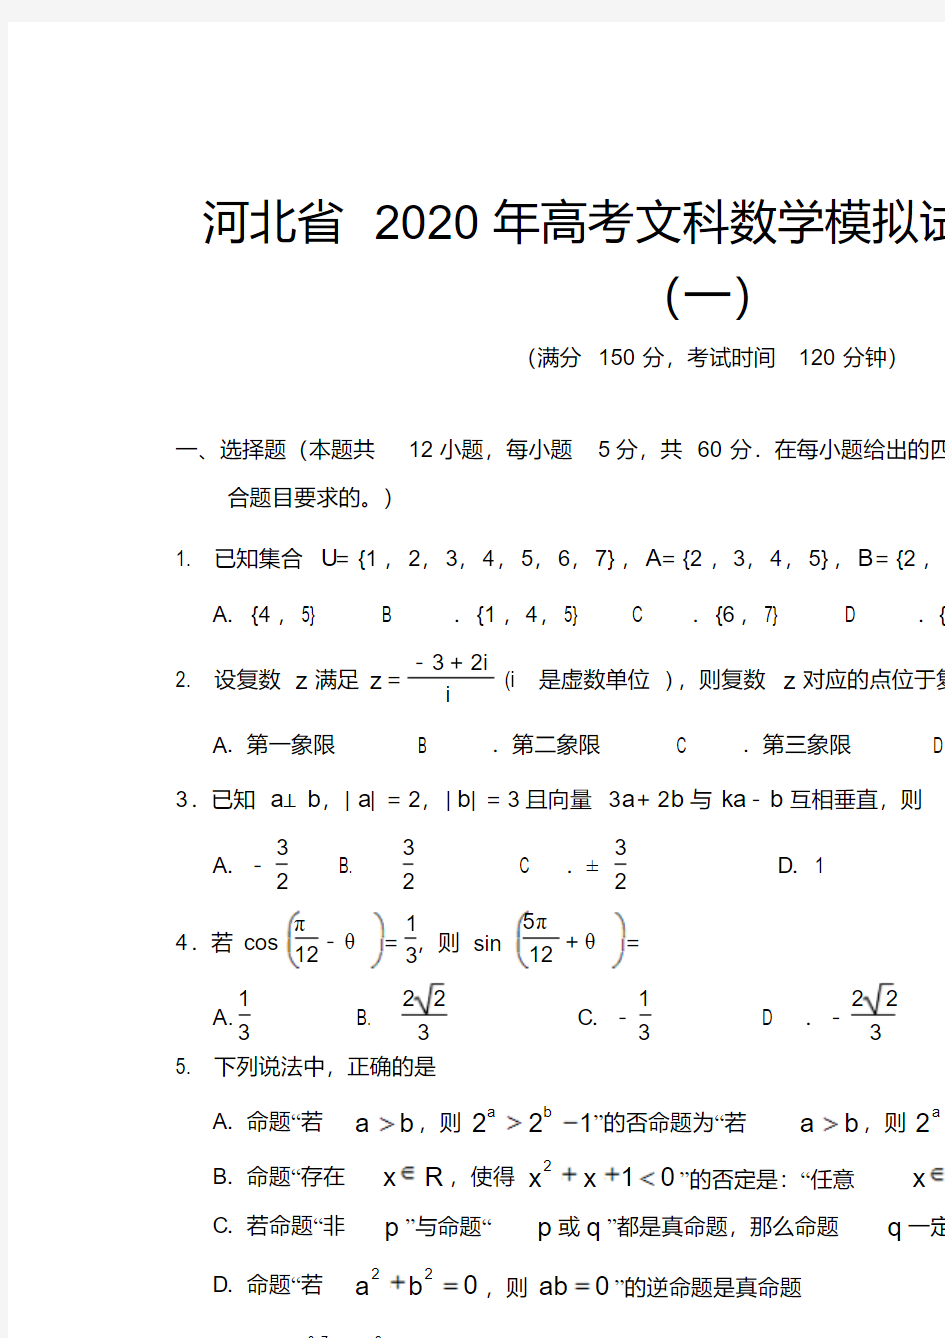 河北省2020年高考文科数学模拟试题及答案(一)